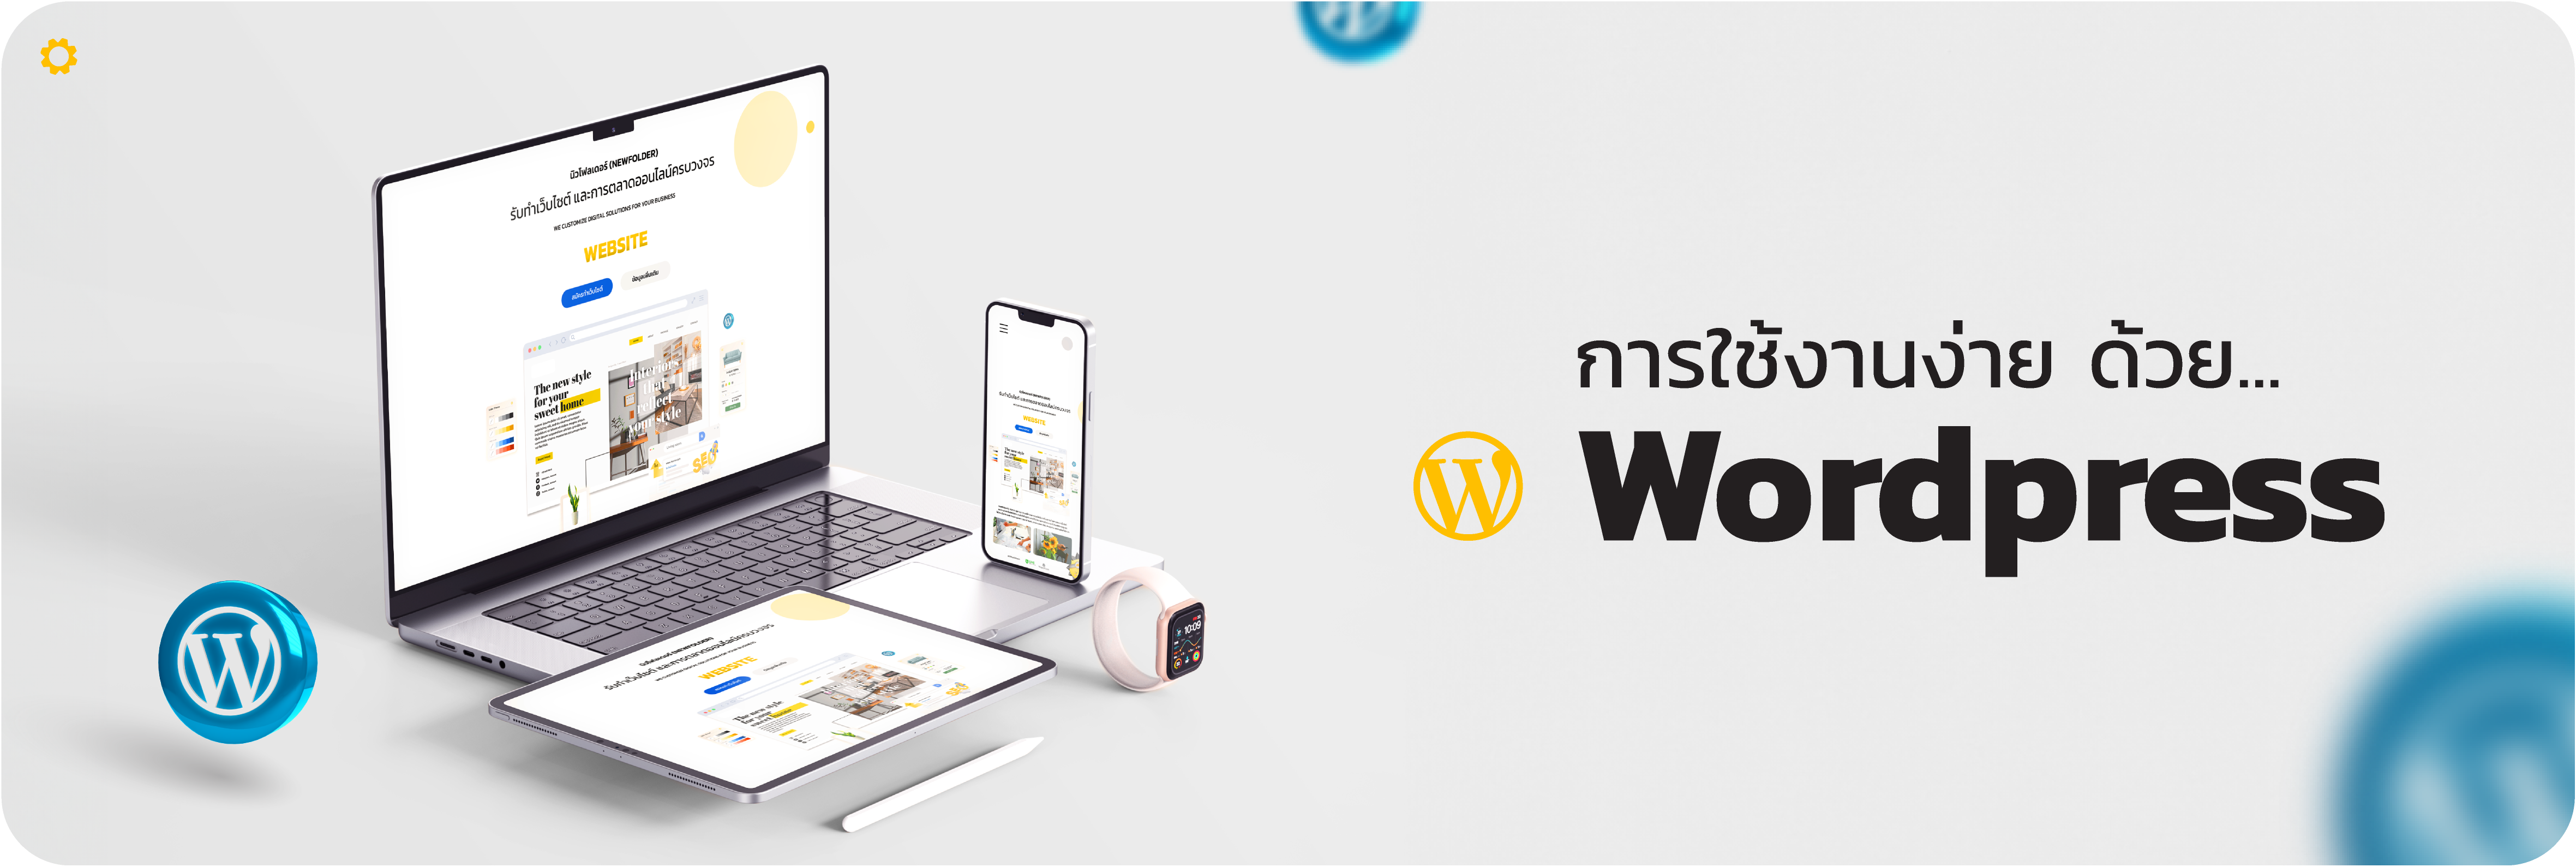 W การใช้งานง่าย ด้วย WordPress